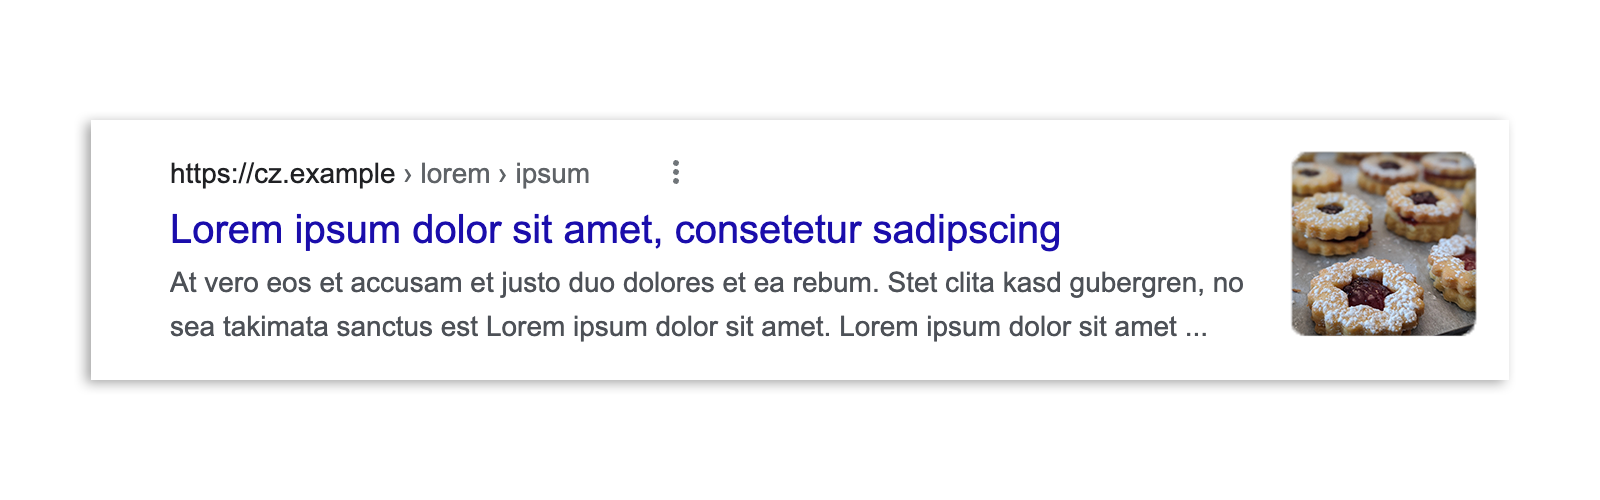 Результат поиска Google в Чехии до принятия поправки к закону: фрагмент статьи, изображение для предварительного просмотра, заголовок и URL.